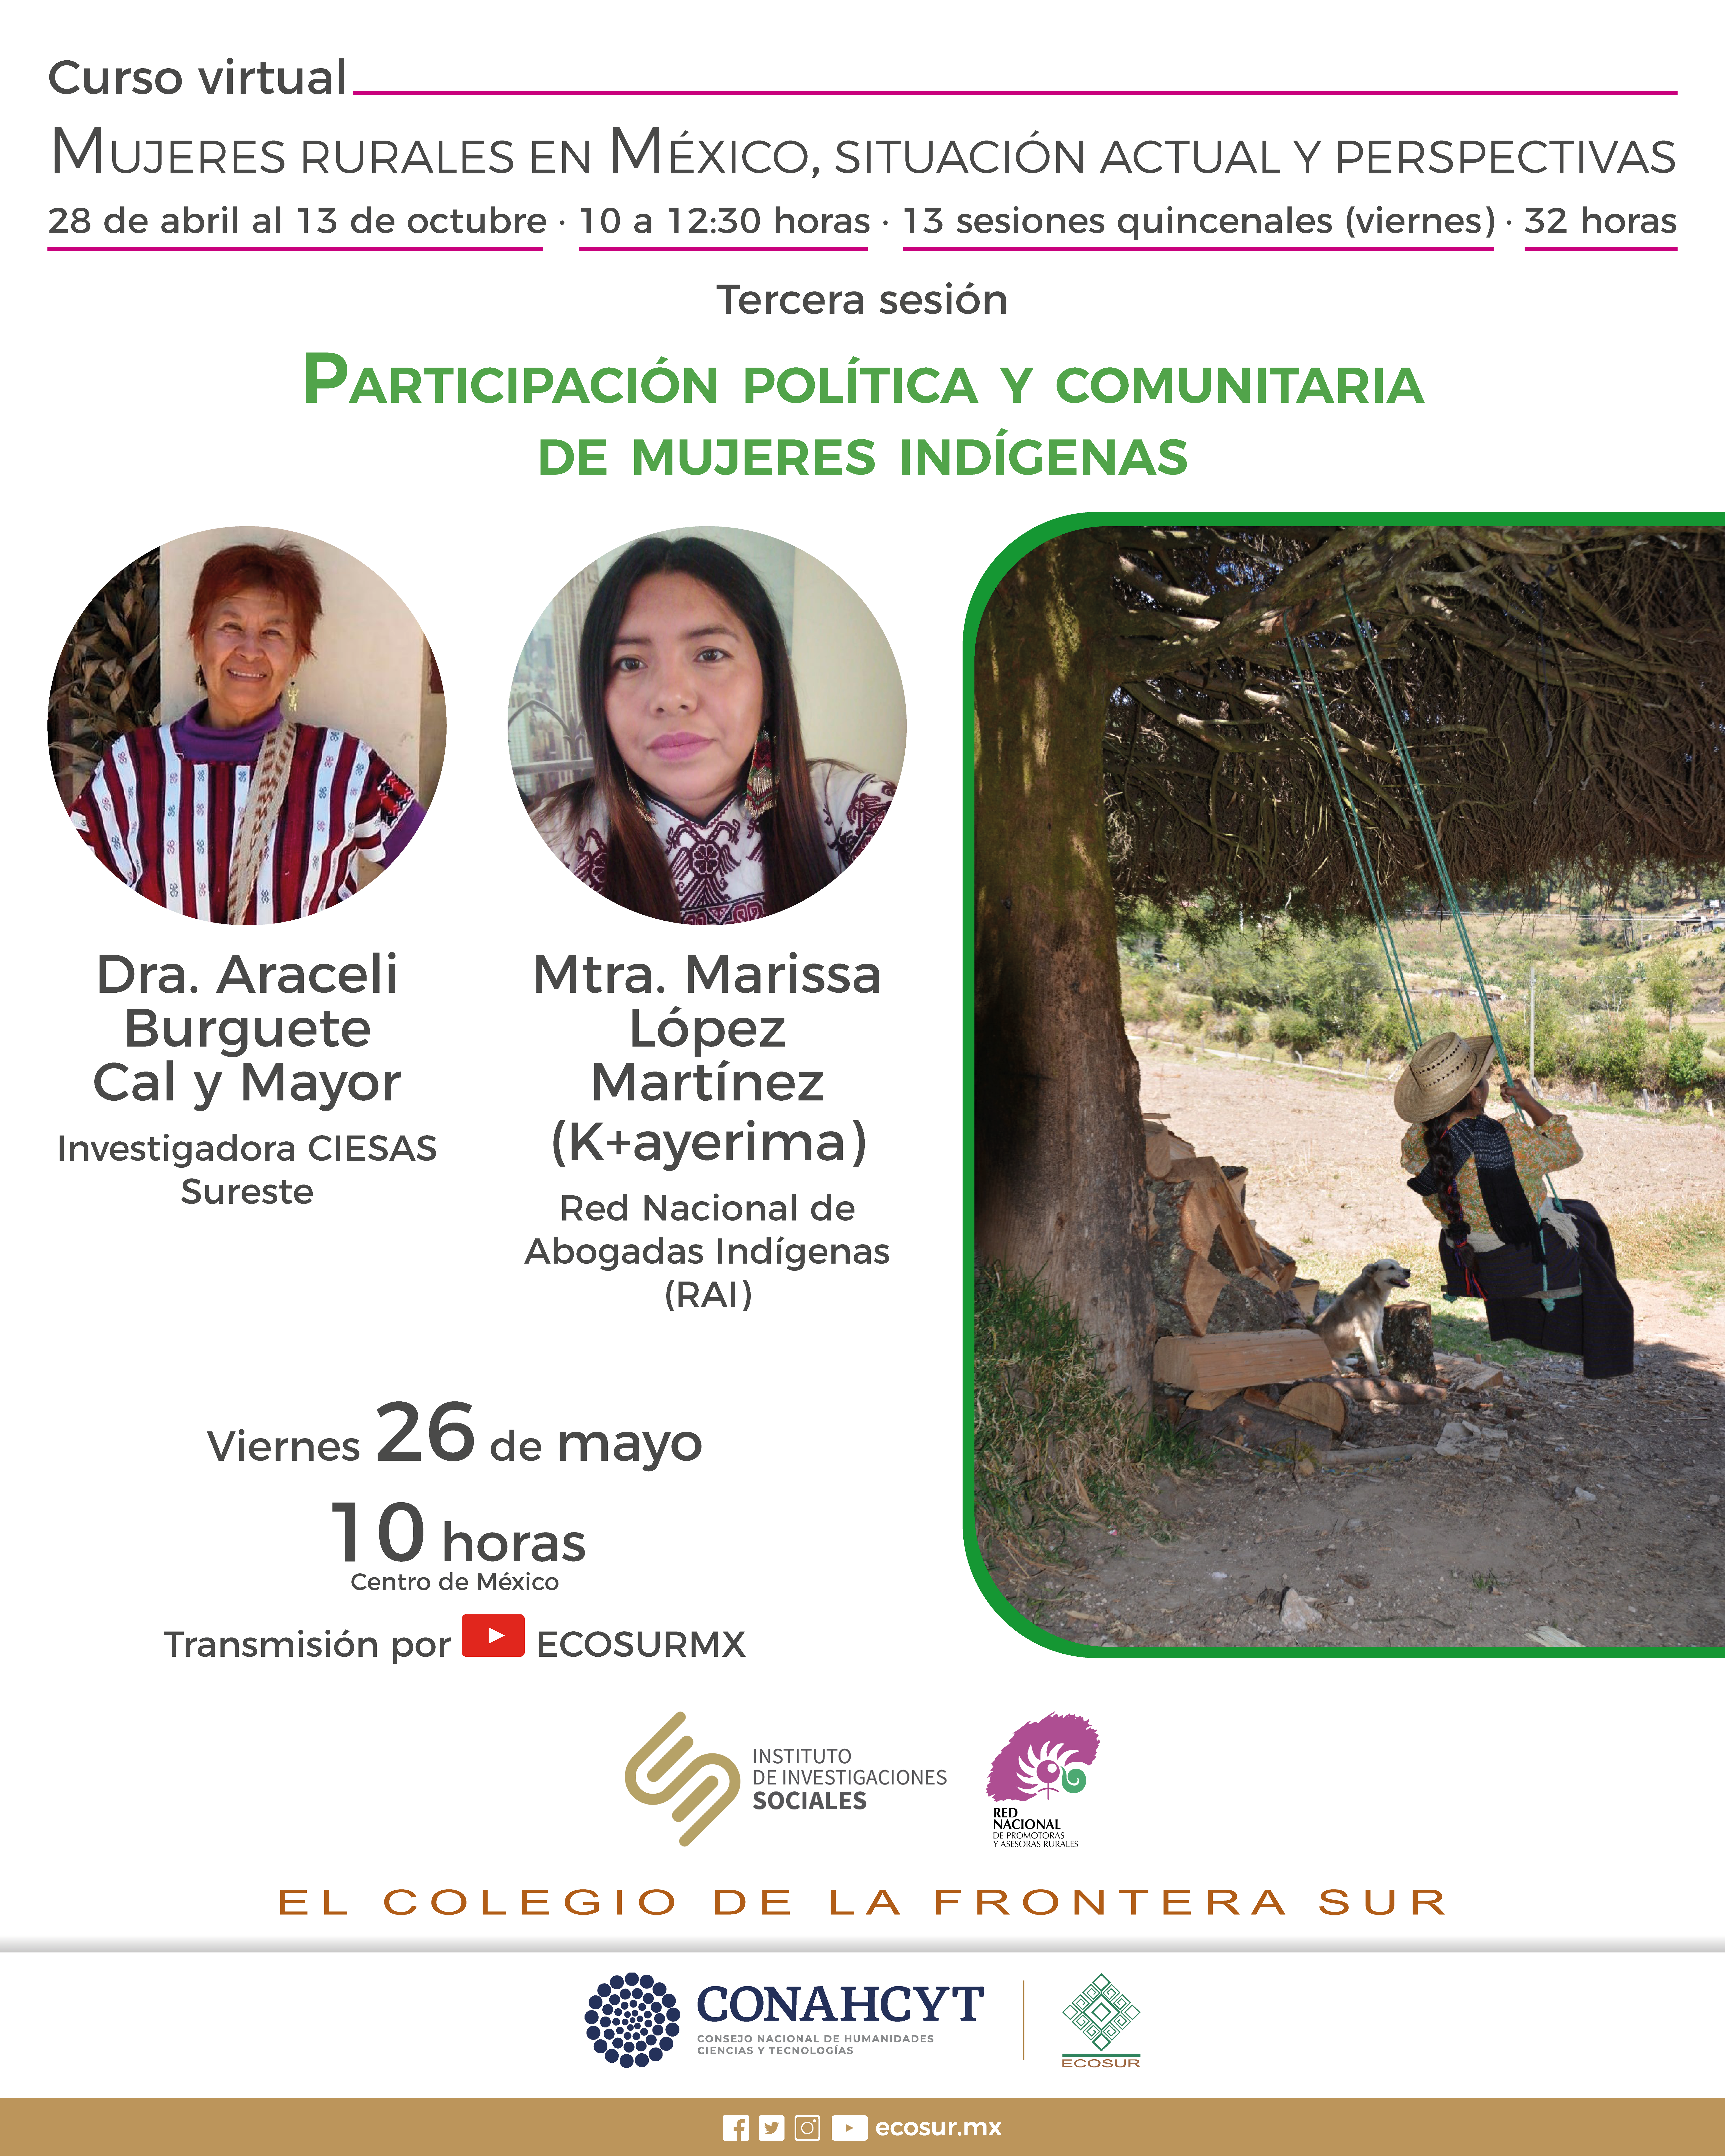 Mujeres rurales en México, situación actual y perspectivas